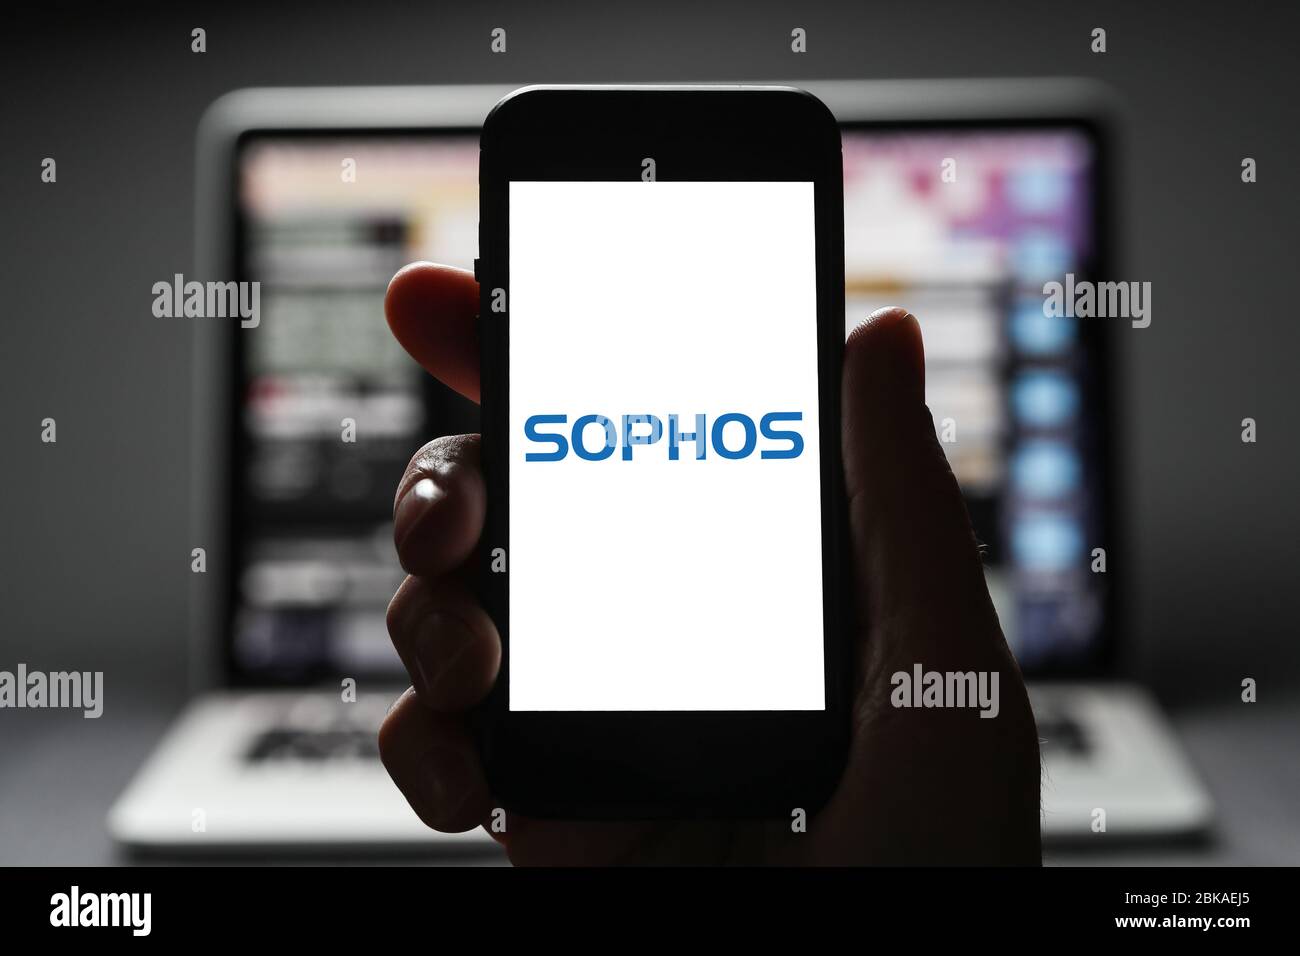 Un homme regardant le logo de Sophos sur son iphone. Sophos est une société de développement de logiciels de cyber-sécurité. (Usage éditorial uniquement) Banque D'Images